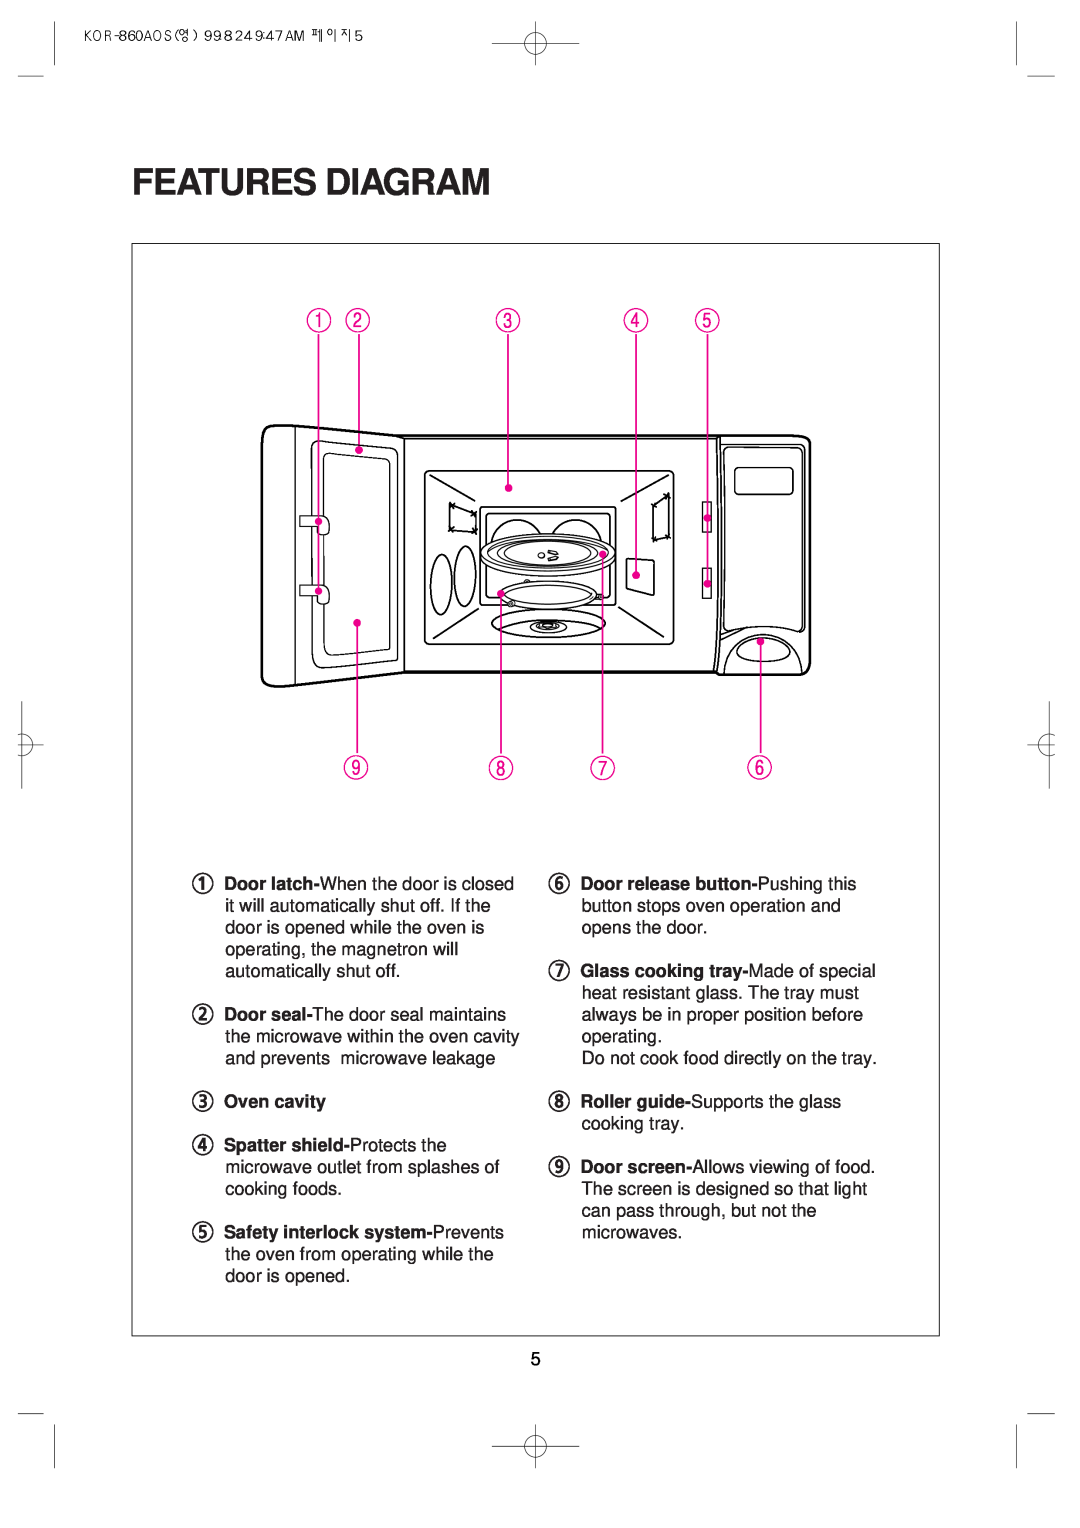 Daewoo KOR-860A manual Features Diagram, Oven cavity 